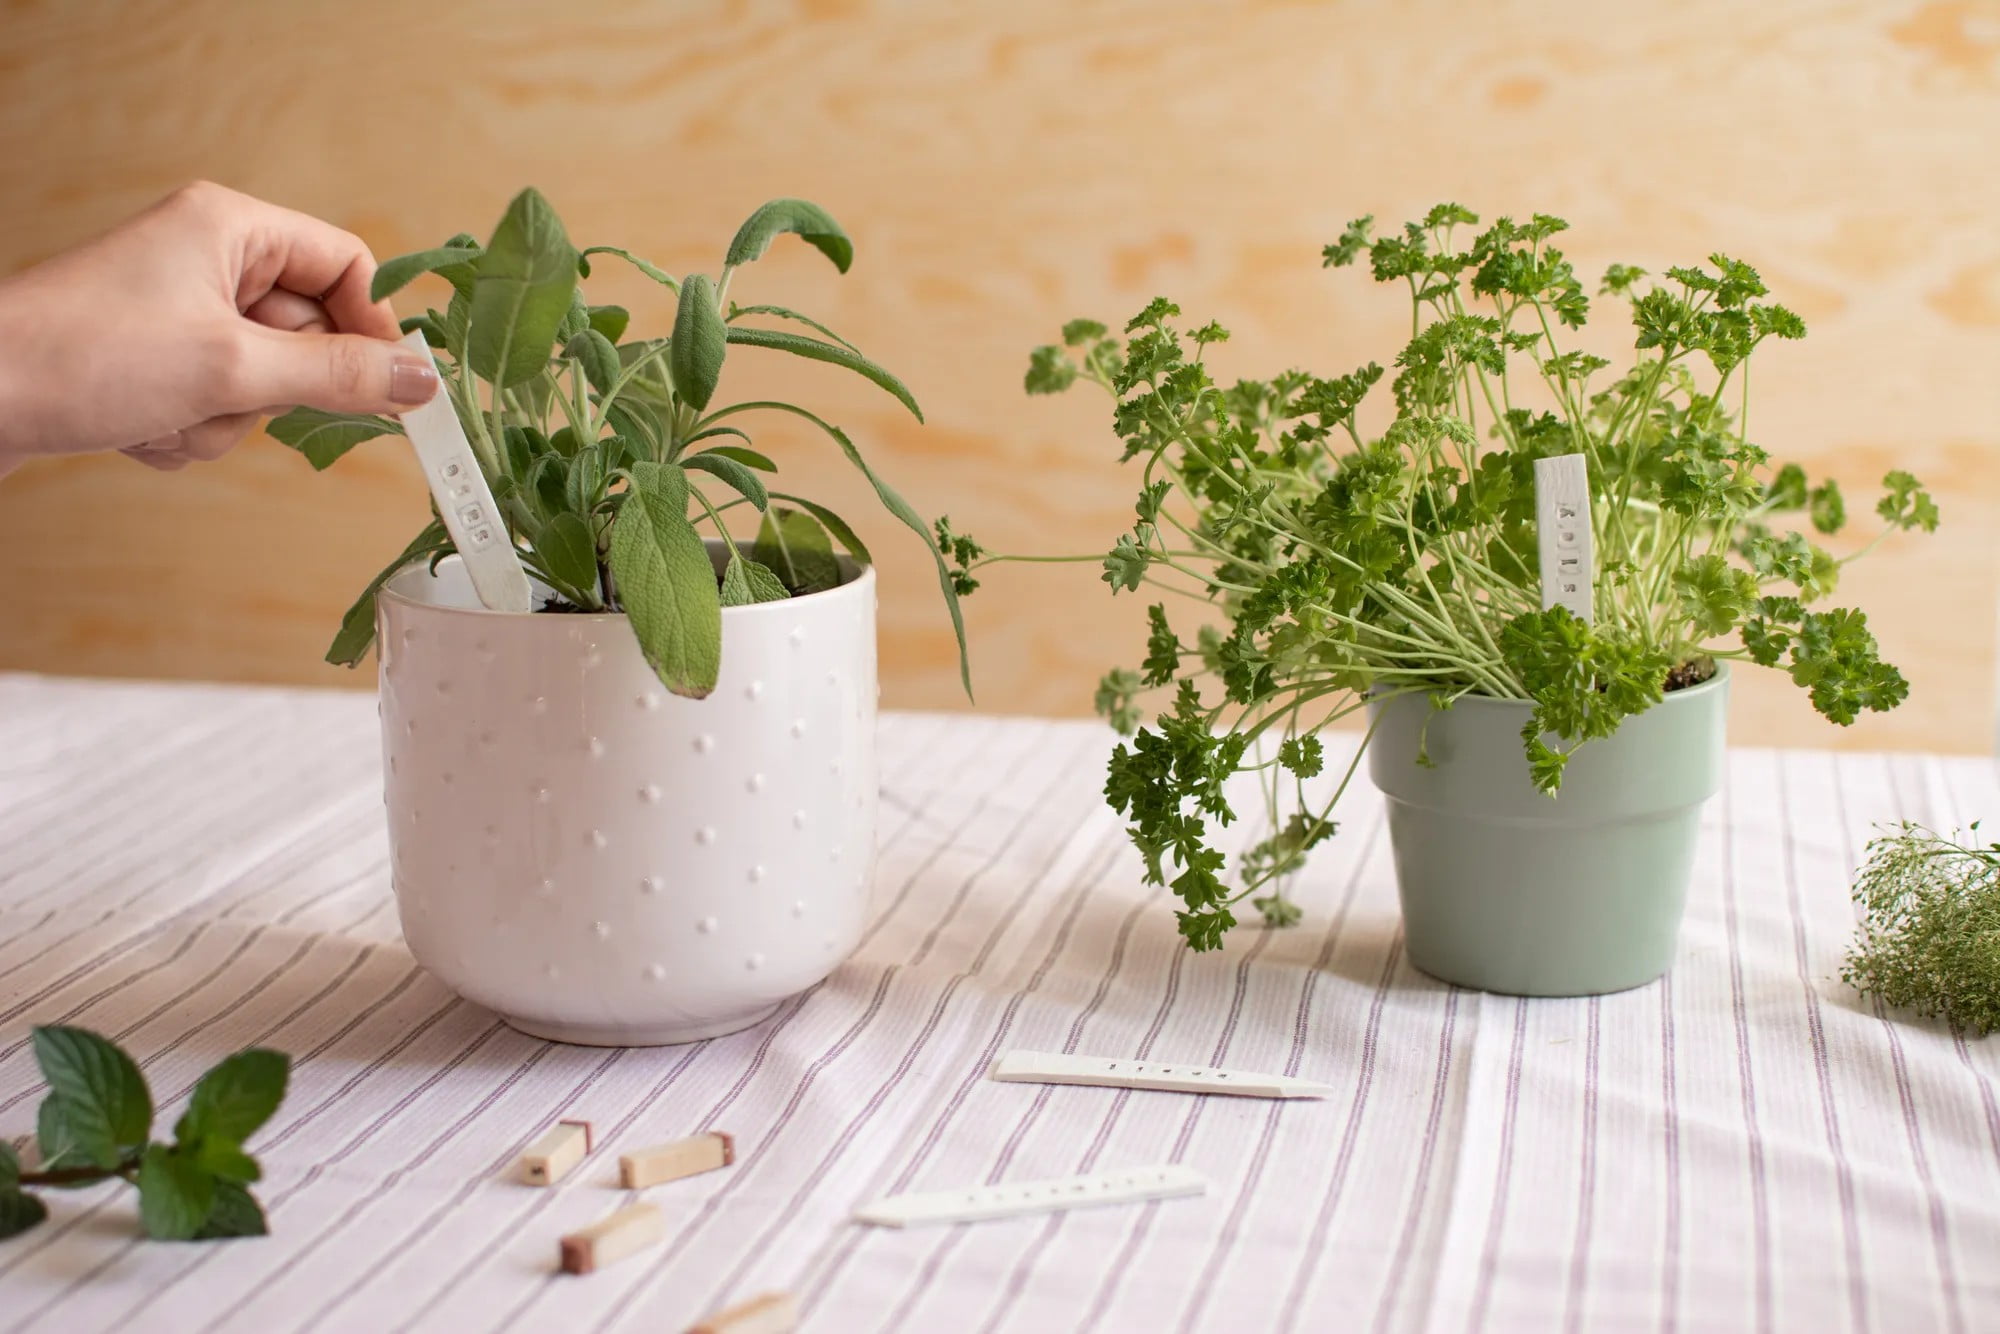 Zaobstarajte si praktické štítky na bylinky, nech viete, čo sú jednotlivé rastlinky zač! Môžete si ich aj vyrobiť zo samotvrdnúcej hmoty.